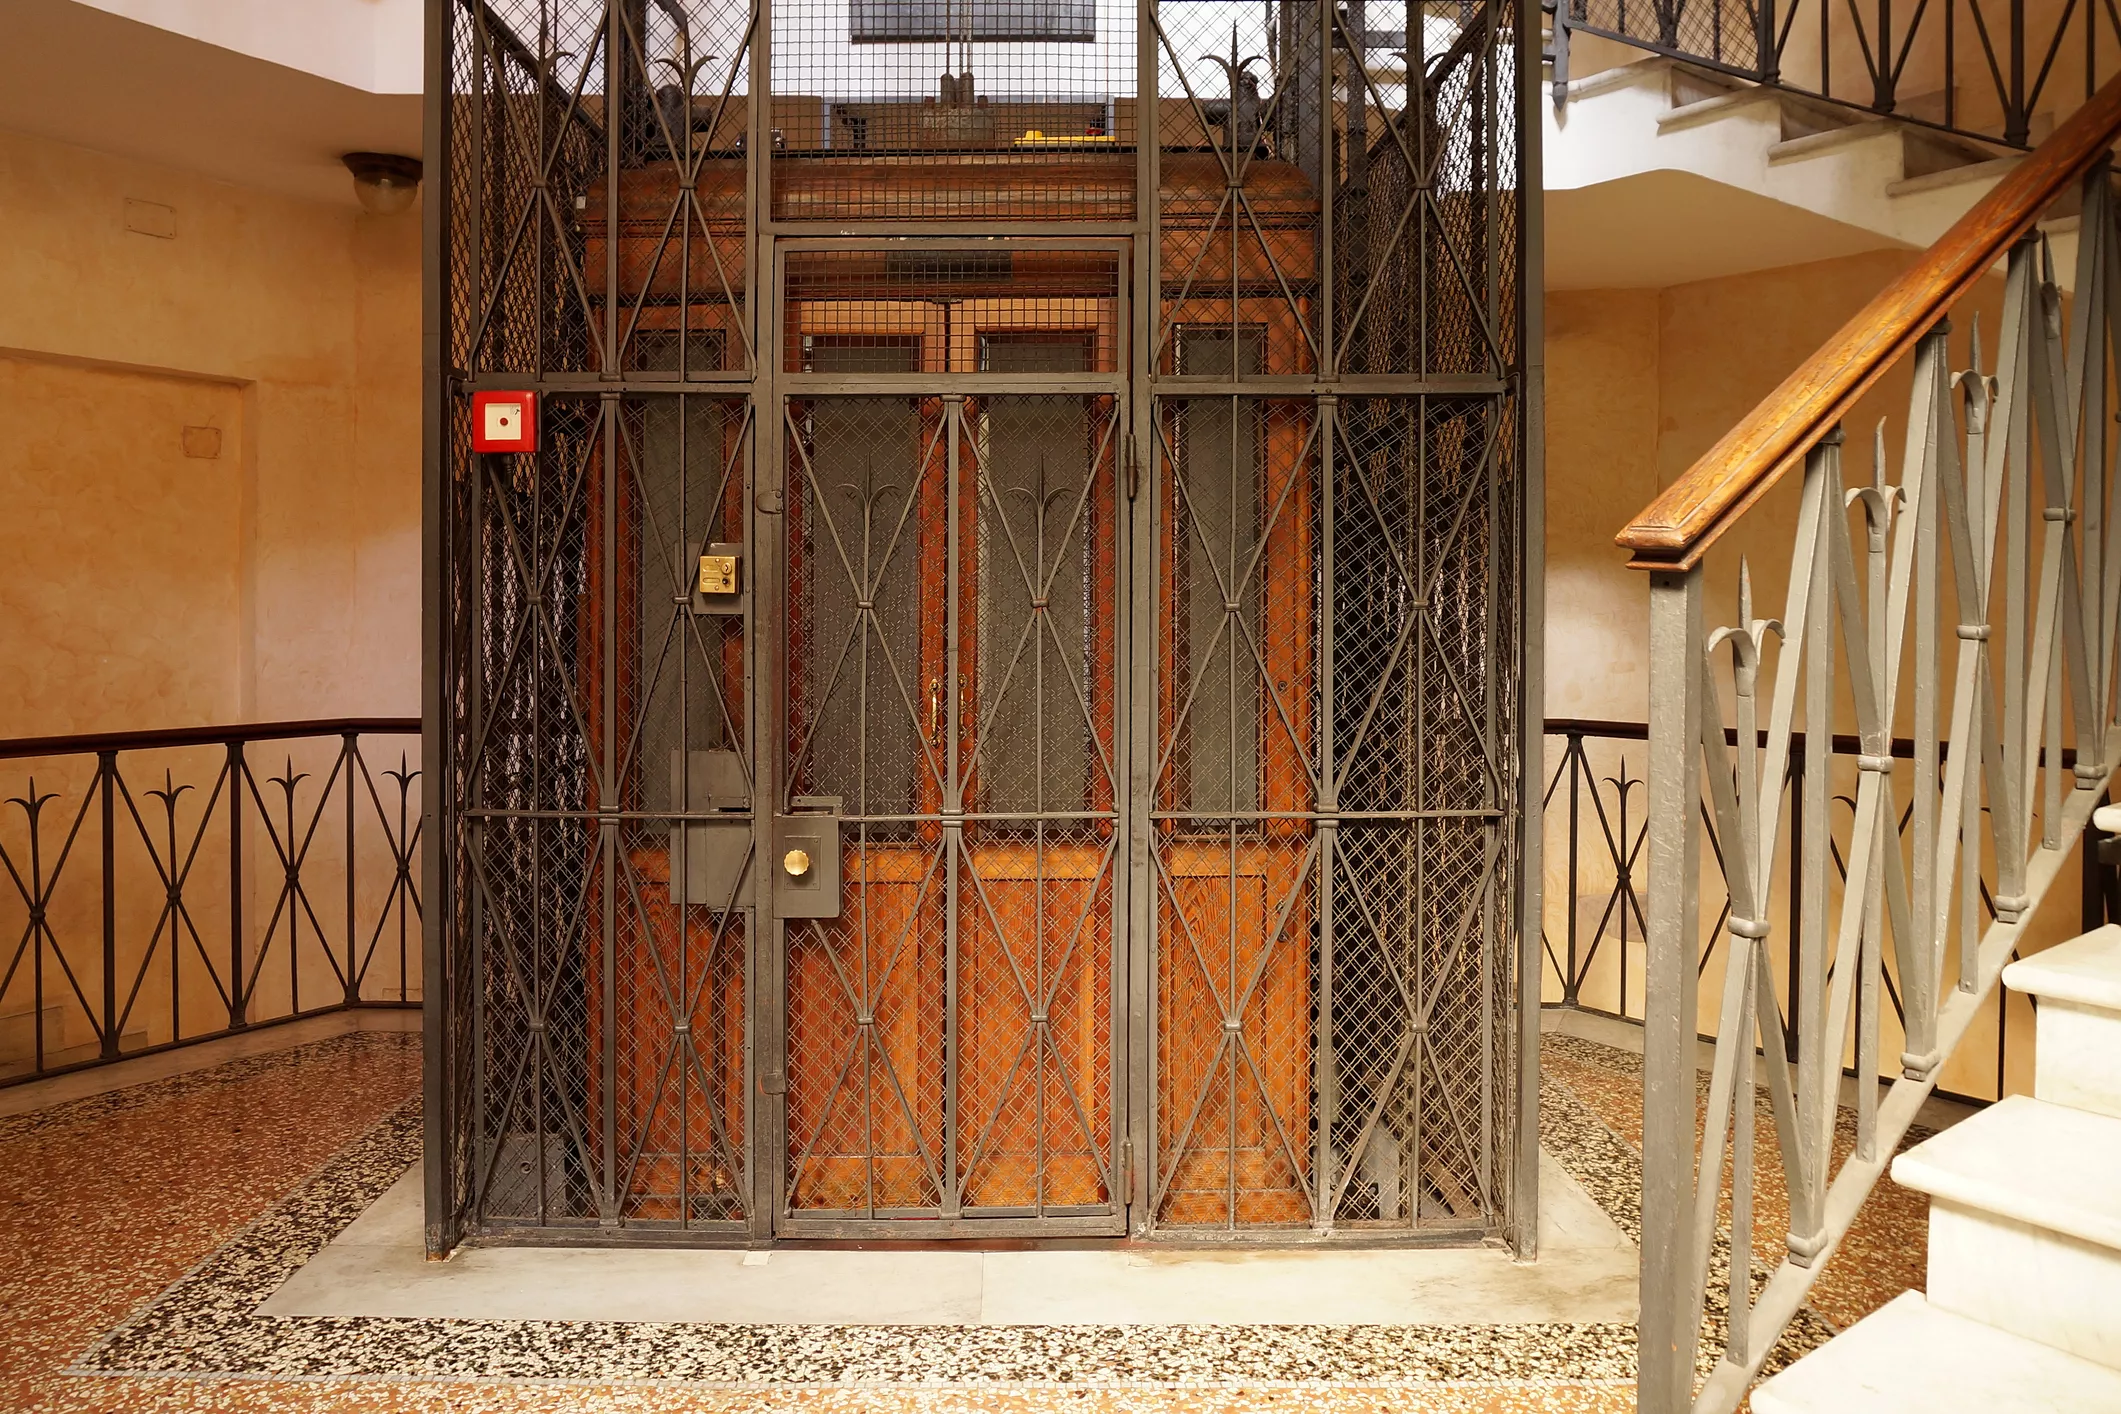 Elisha Otis va dissenyar la patent de l'ascensor amb fre de seguretat